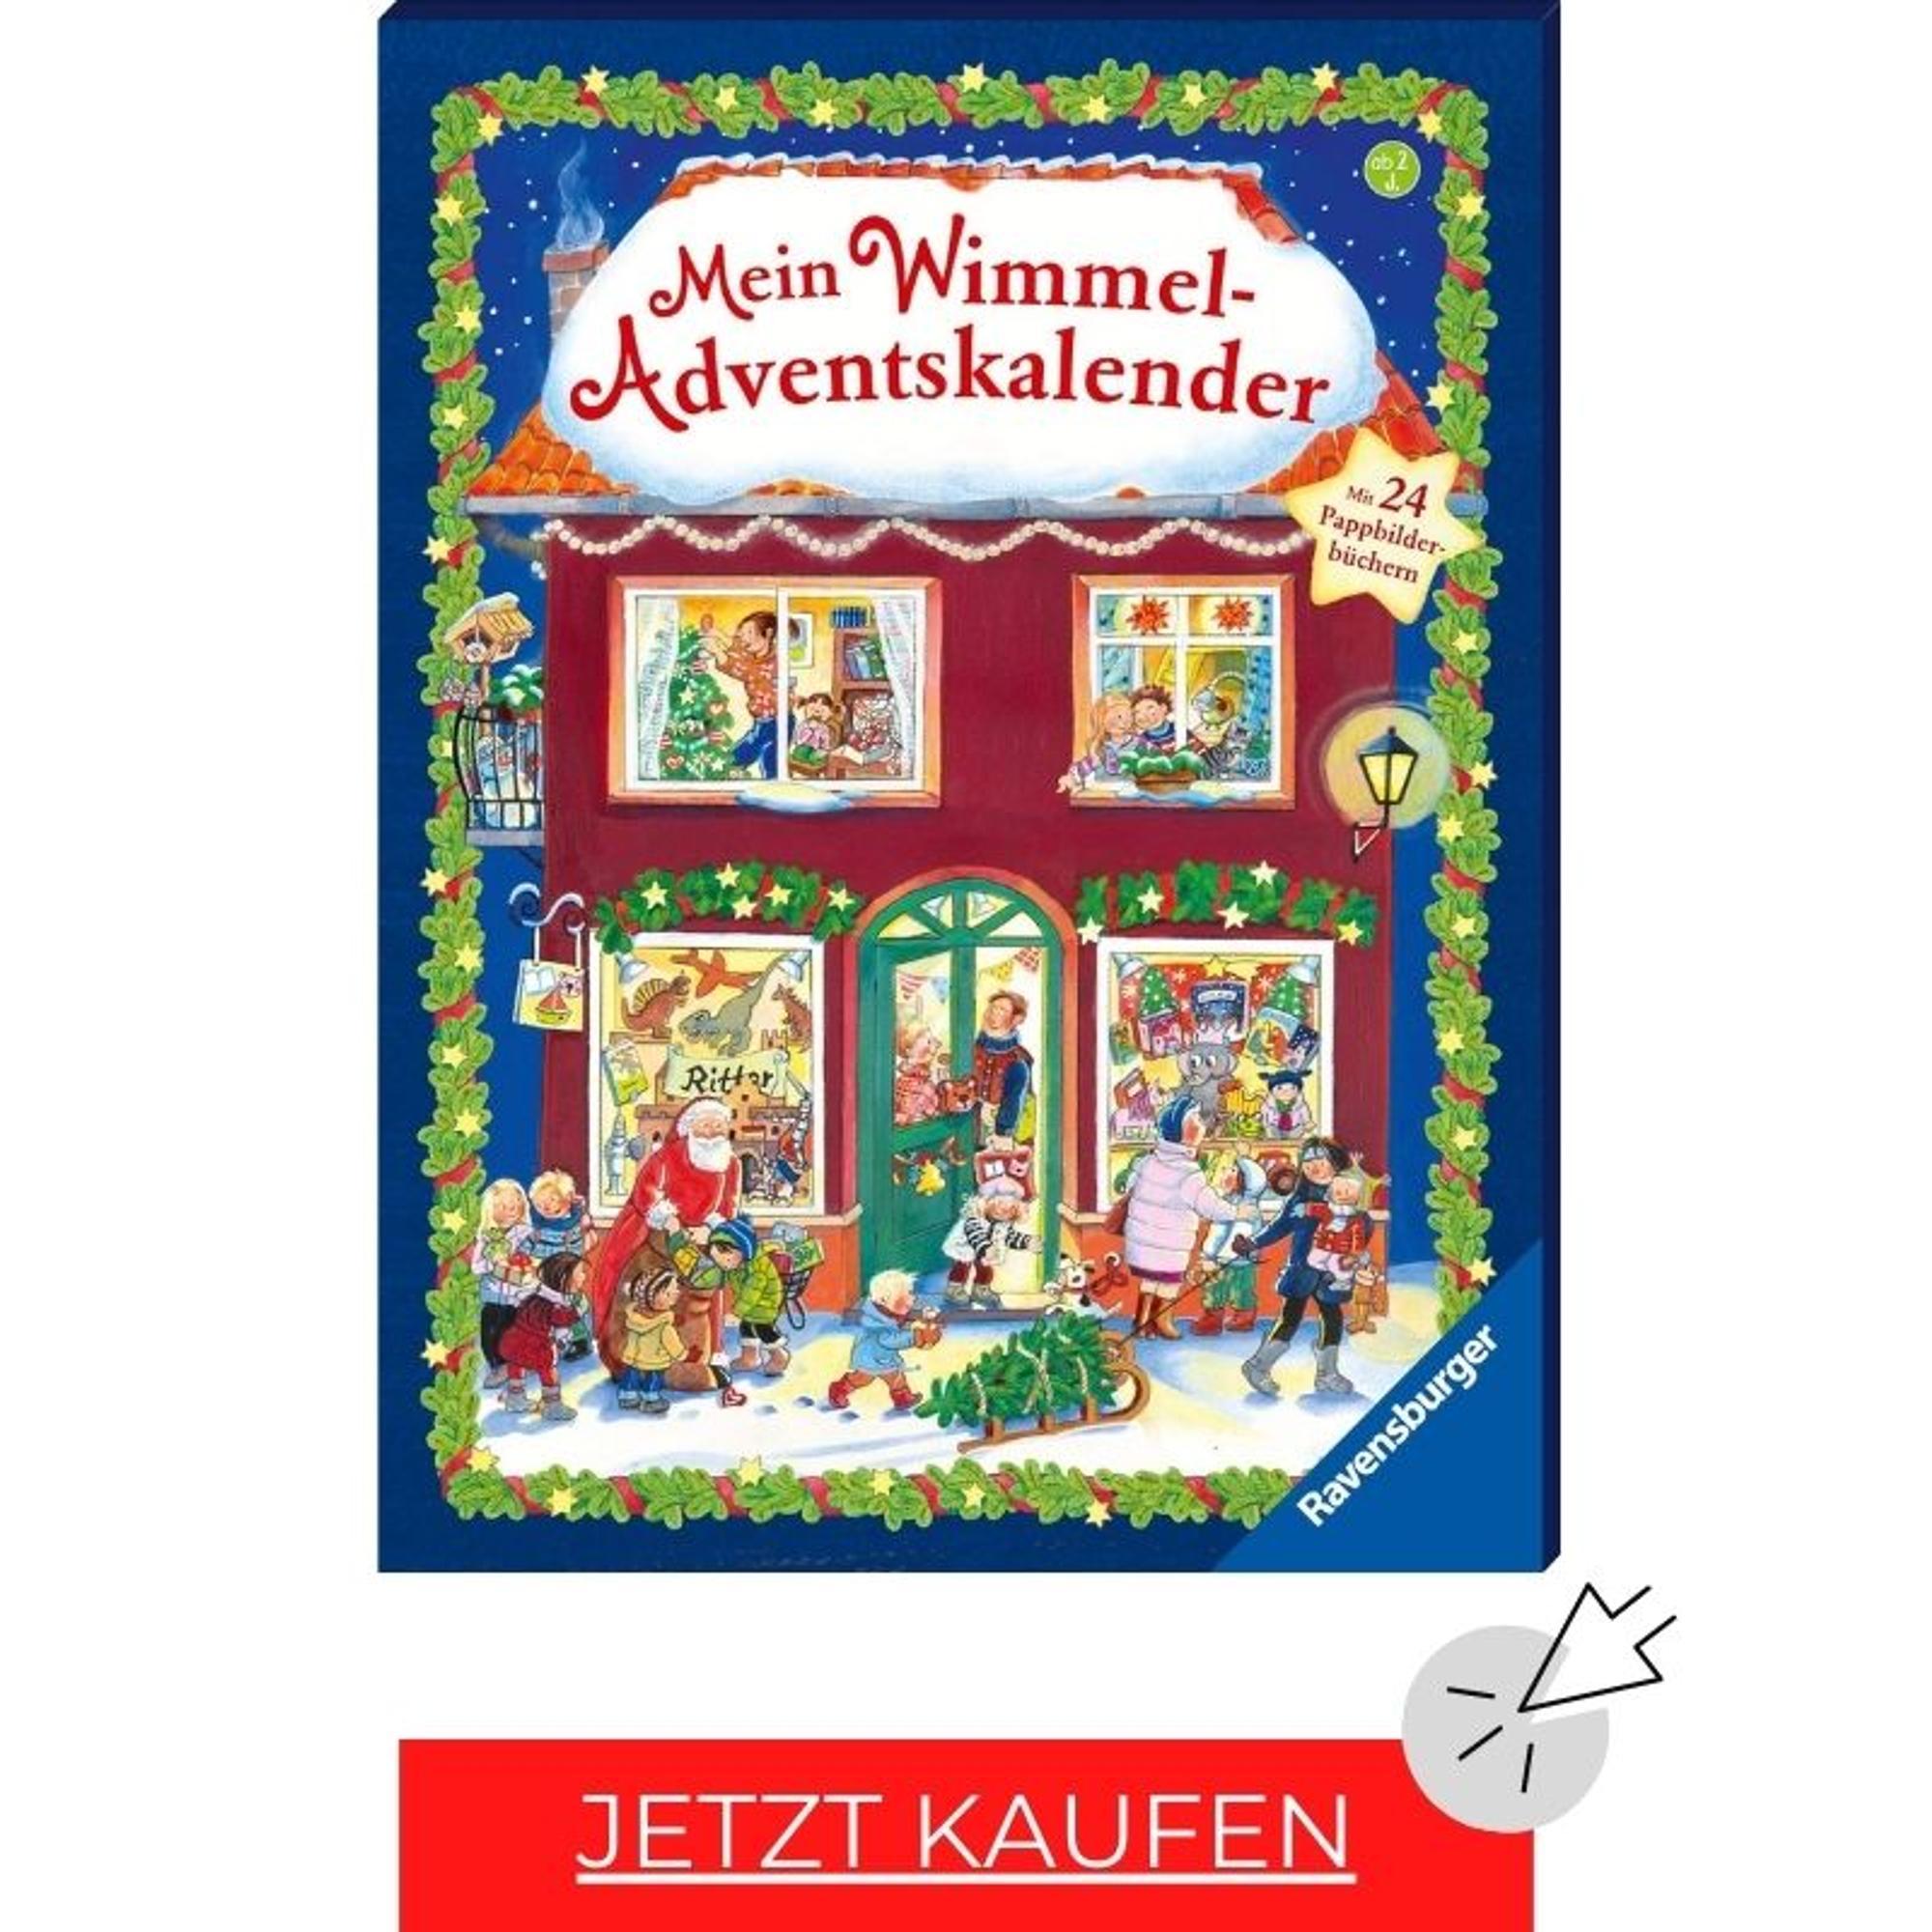 Adventskalender-Buch: Mein Wimmel-Adventskalender